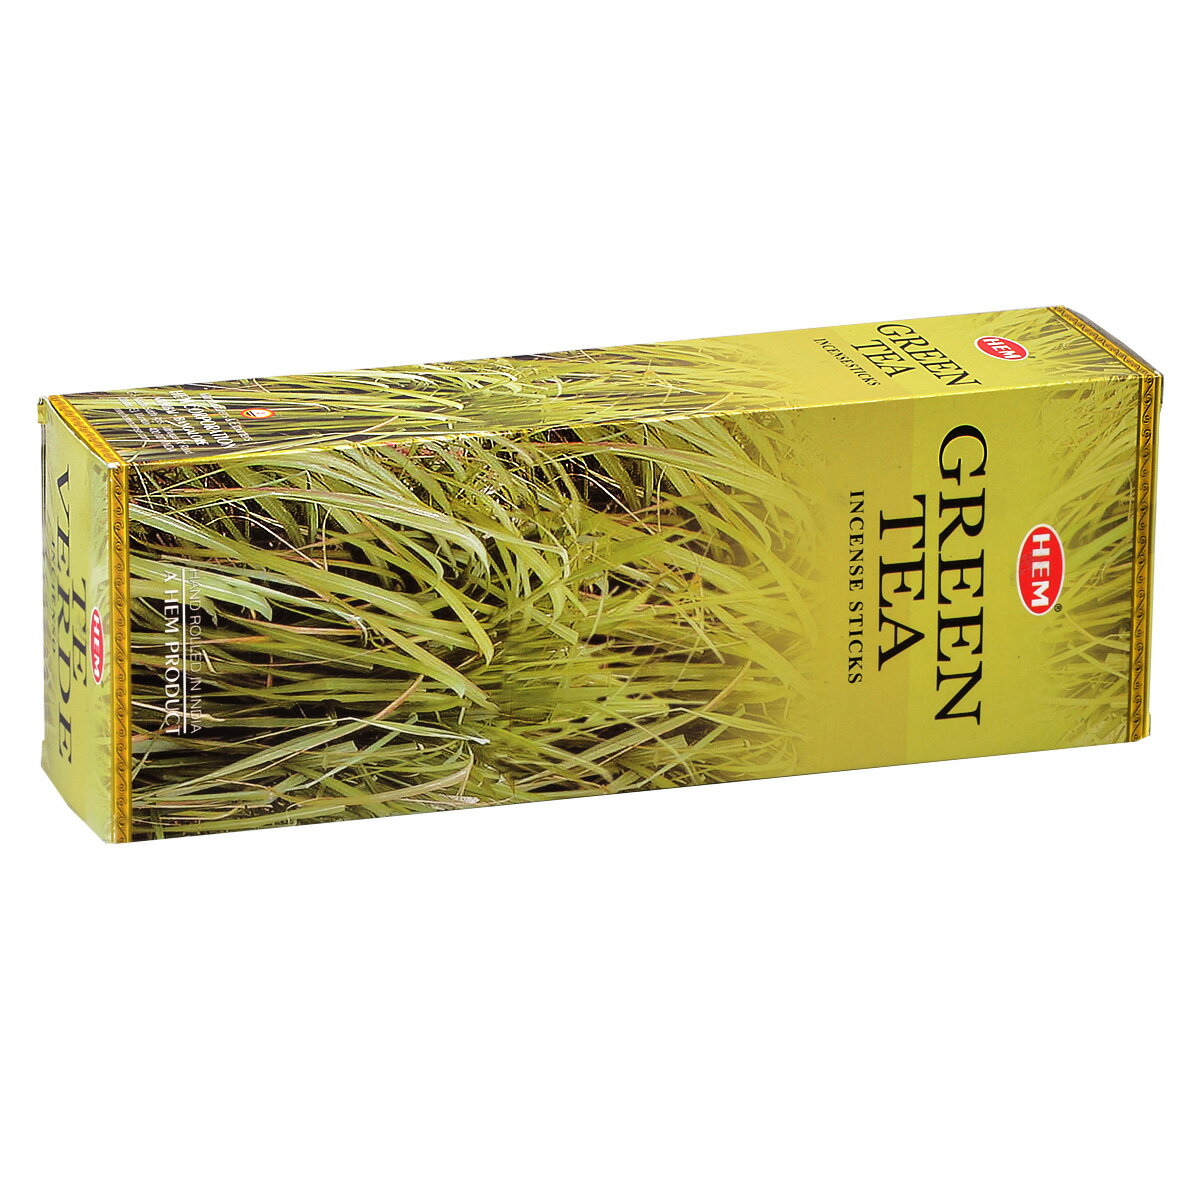 ヘム HEM スティック GREEN TEA グリーン ティー 1ケース 6箱入り 約120本 セット エコノミー